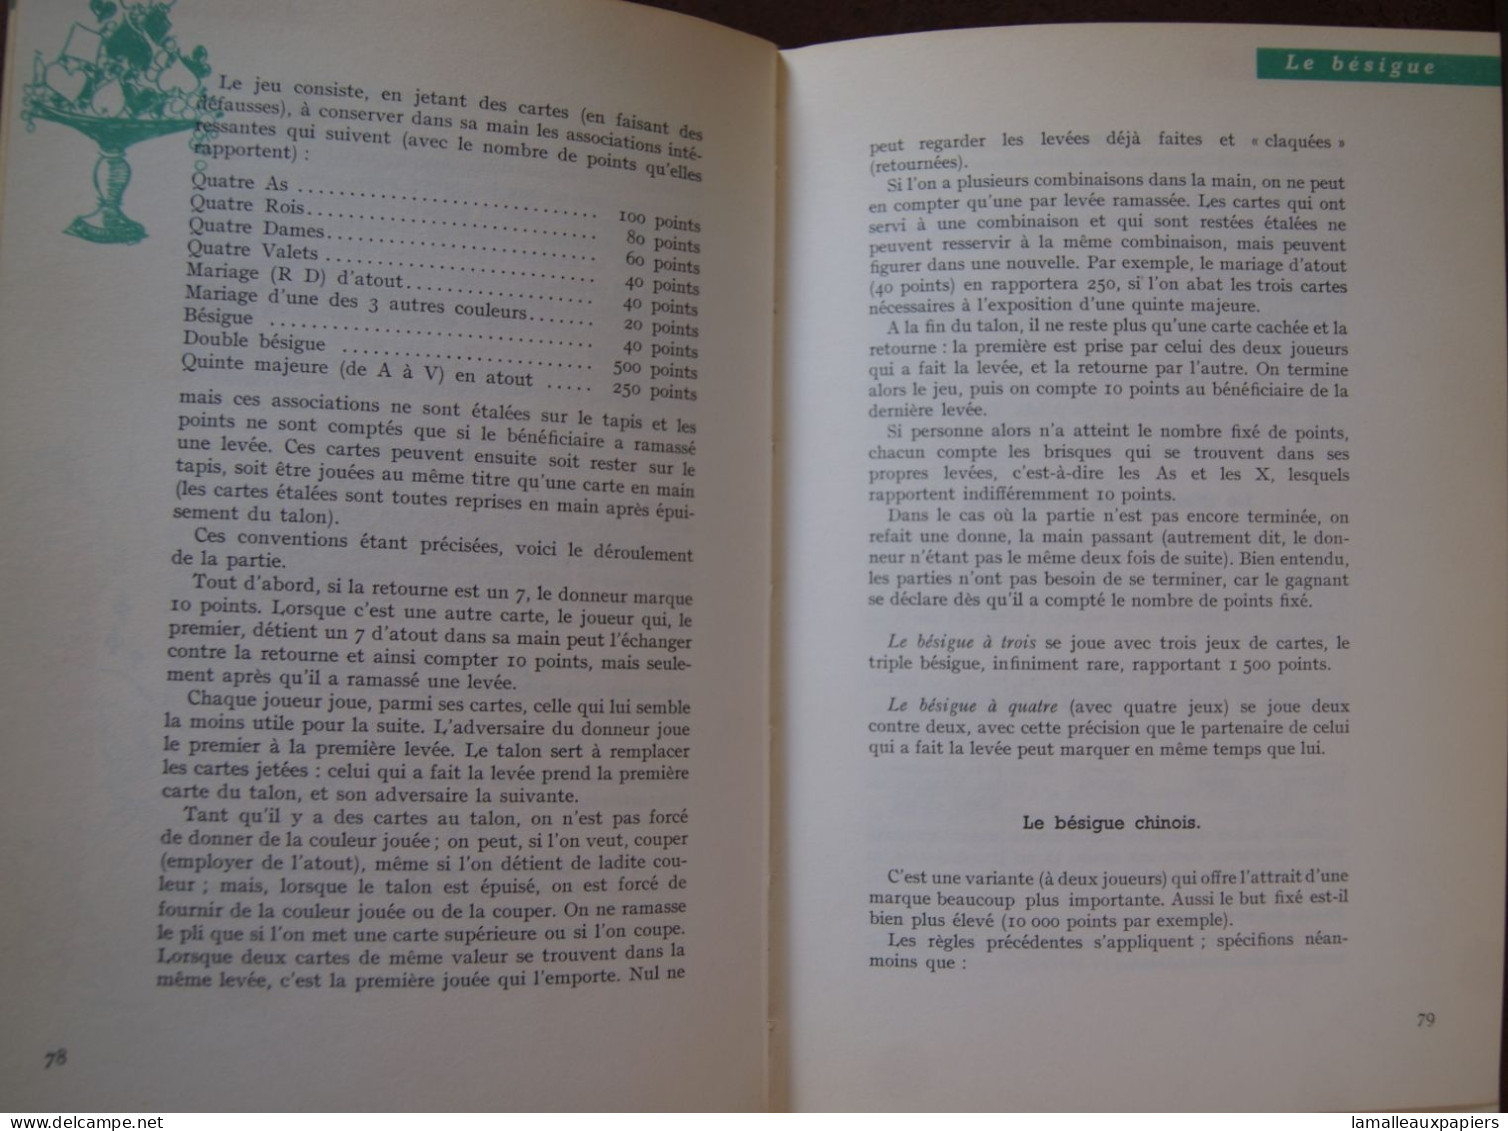 Le Code Des Jeux (Claude AVELINE) (1961) - Giochi Di Società